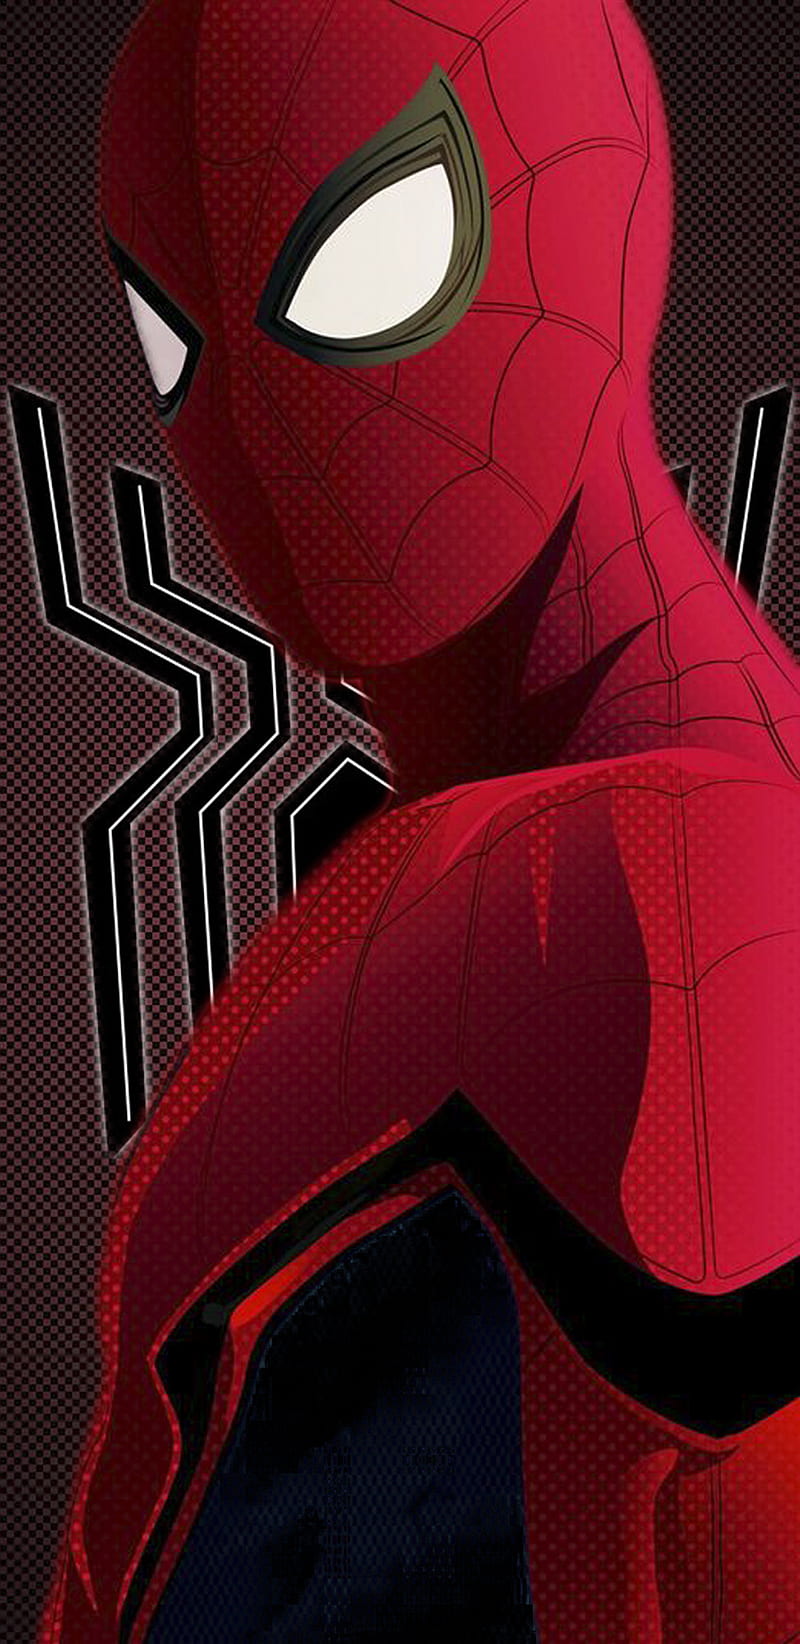 Spider man, avengers endgame, logo, marvel, new , spiderman, spiderman far from home, theme, HD phone wallpaper